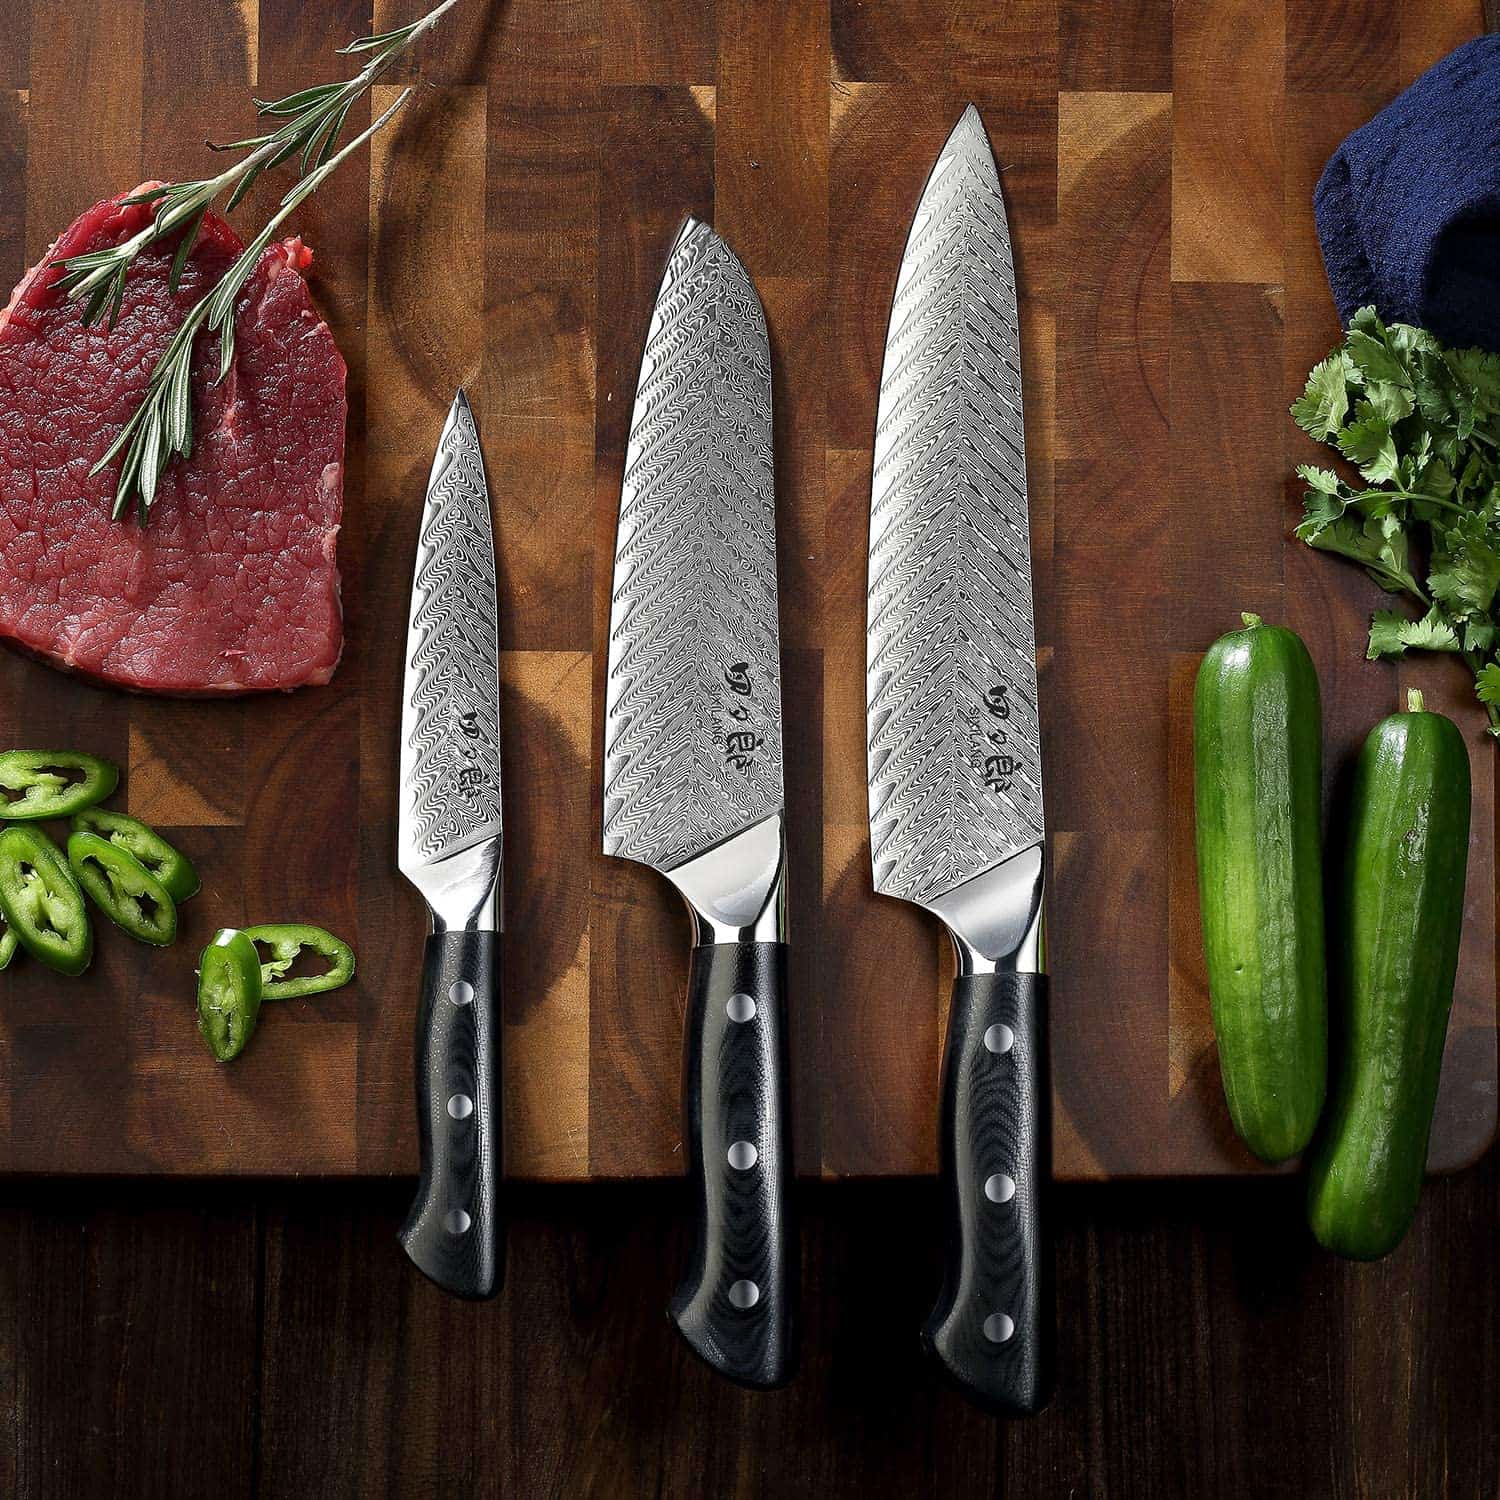 Juego de cuchillos de acero japonés AUS 10 de mejor presupuesto: SIXILANG Damascus tres cuchillos de cocina con tabla de cortar